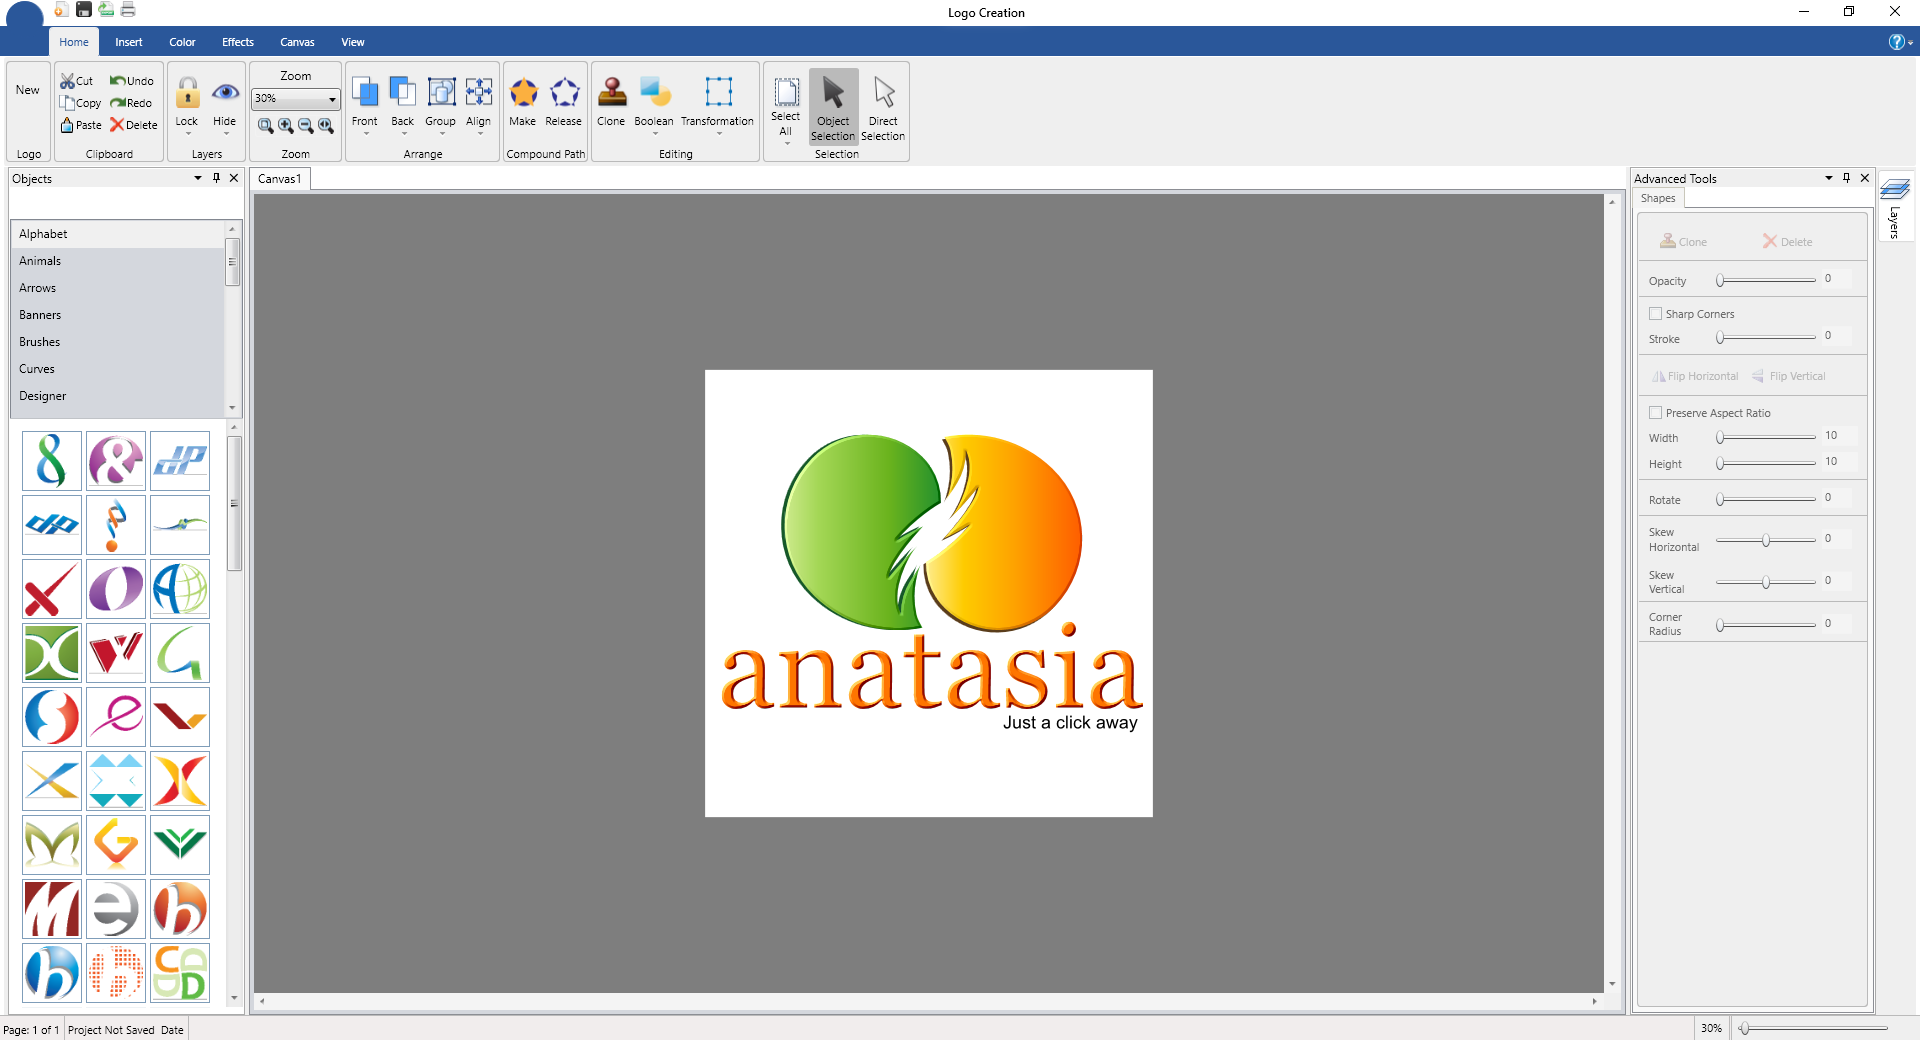 logo designer software